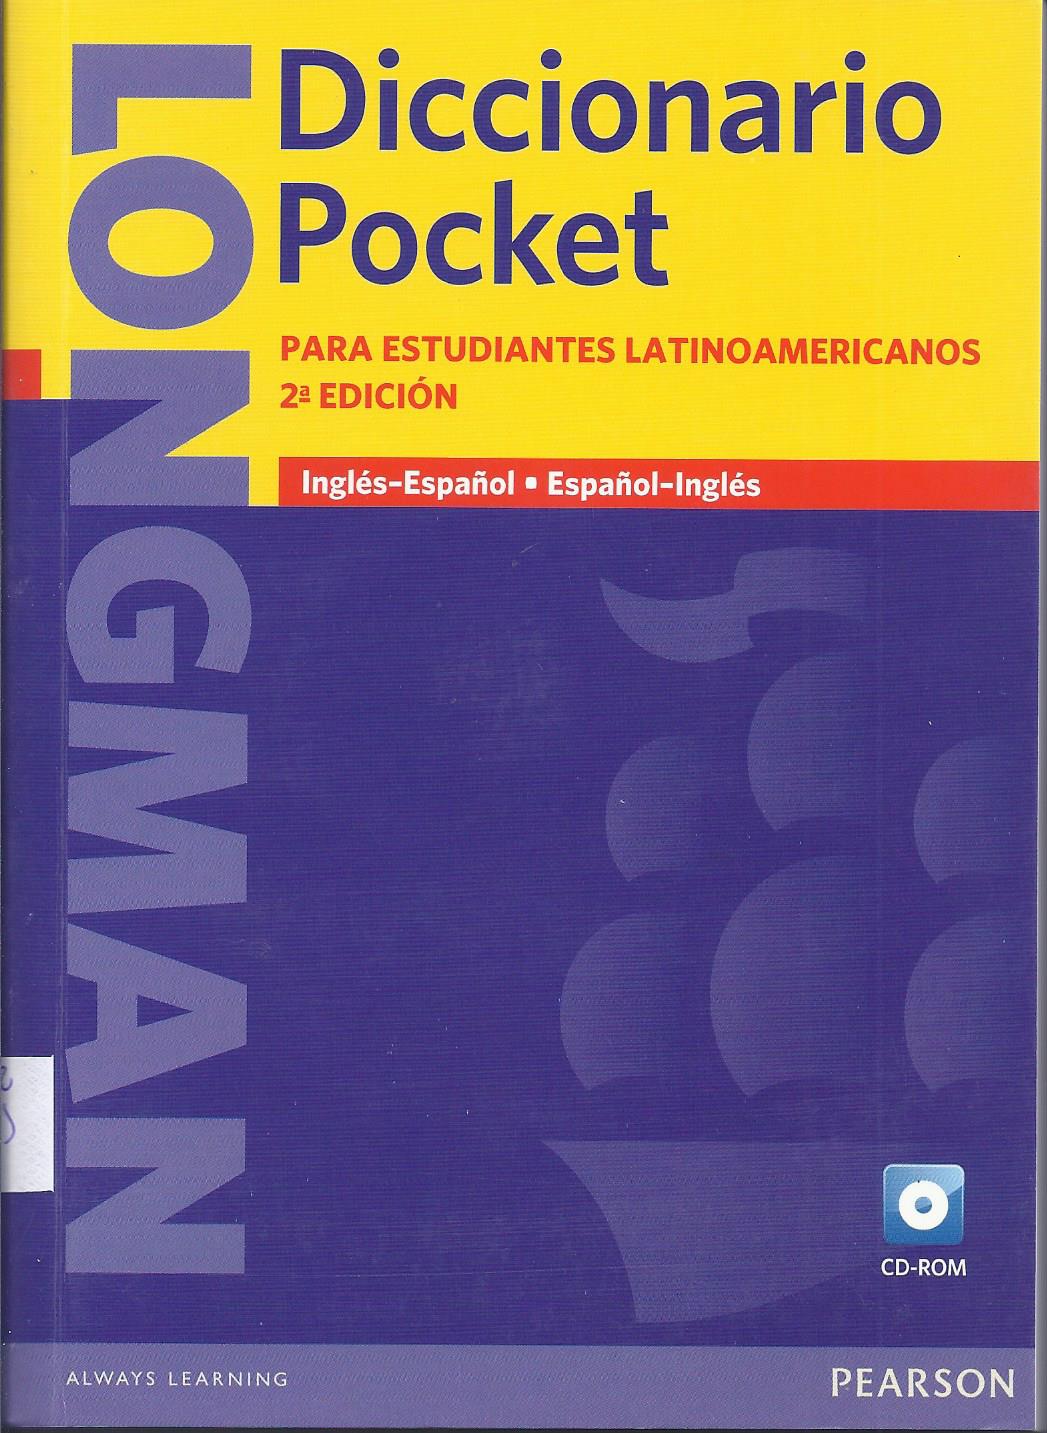 Longman Diccionario Pocket para estudiantes latinoamericanos